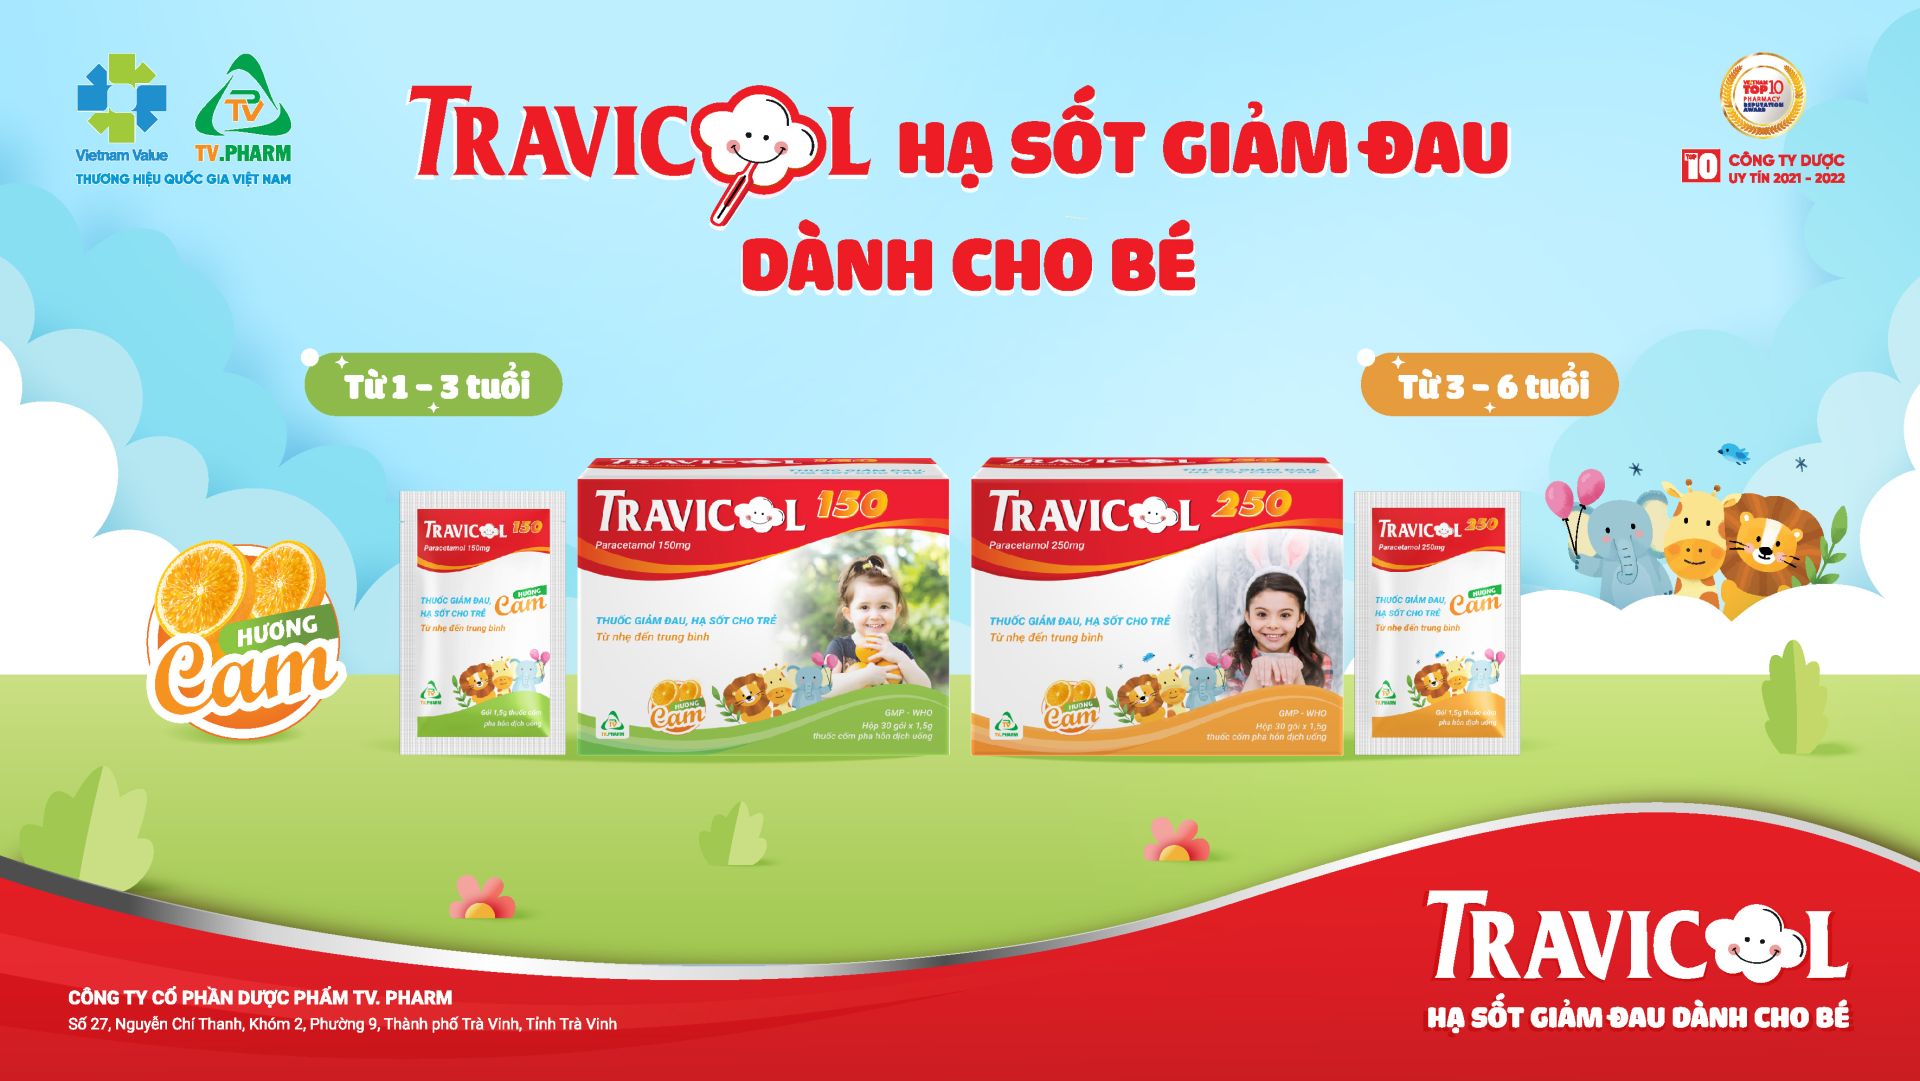 Travicol 150 & Travicol 250 hạ sốt giảm đau dành cho bé